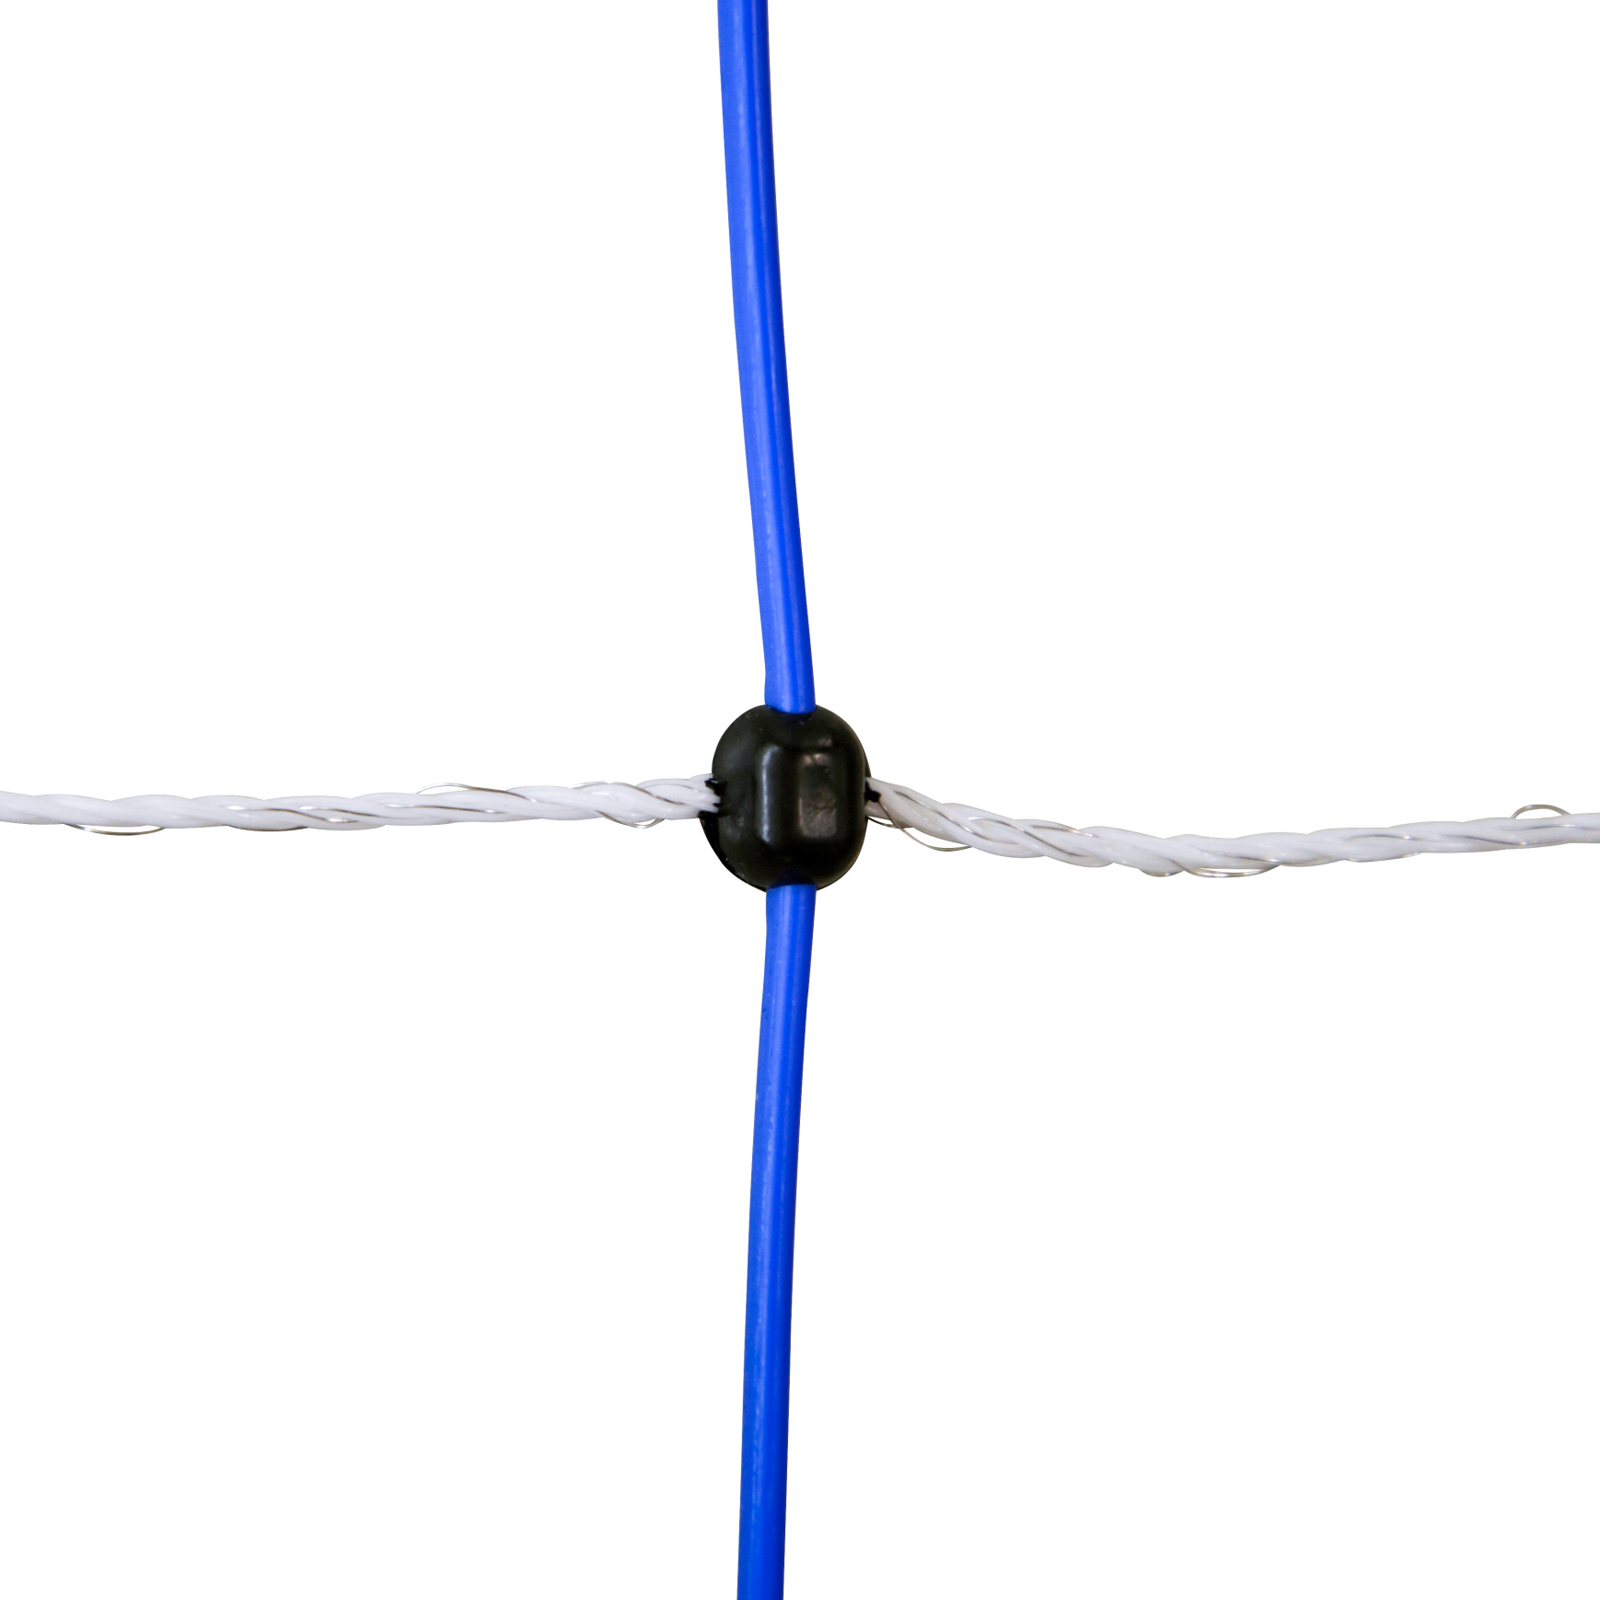 Ako Wildzaun TitanNet 145 mit Strom, Doppelspitze, weiß-blau 50 m x 145 cm